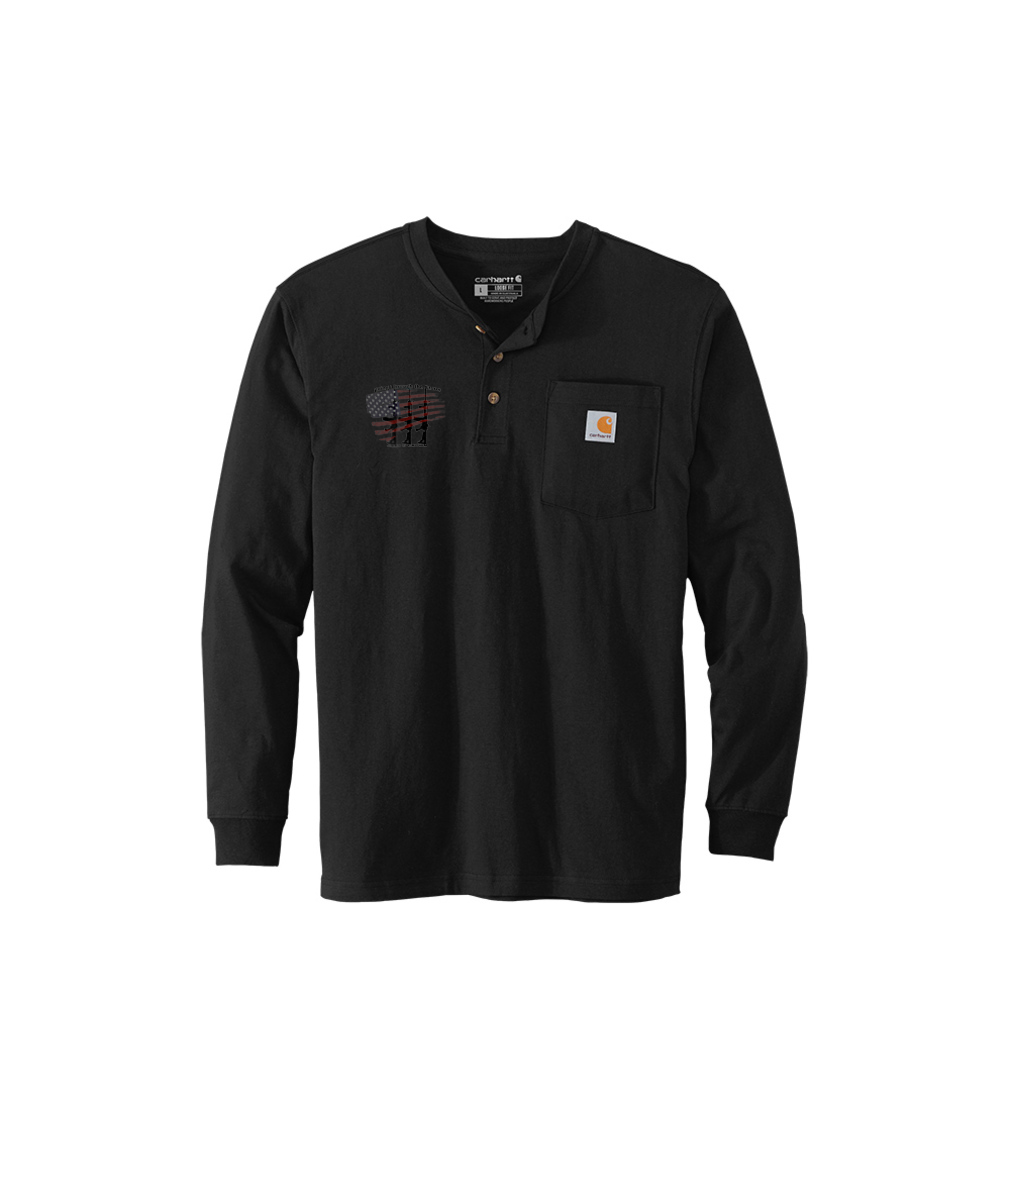 Jaxs & crown gtts Embroided Carhartt Long Sleeve Henley T-Shirt